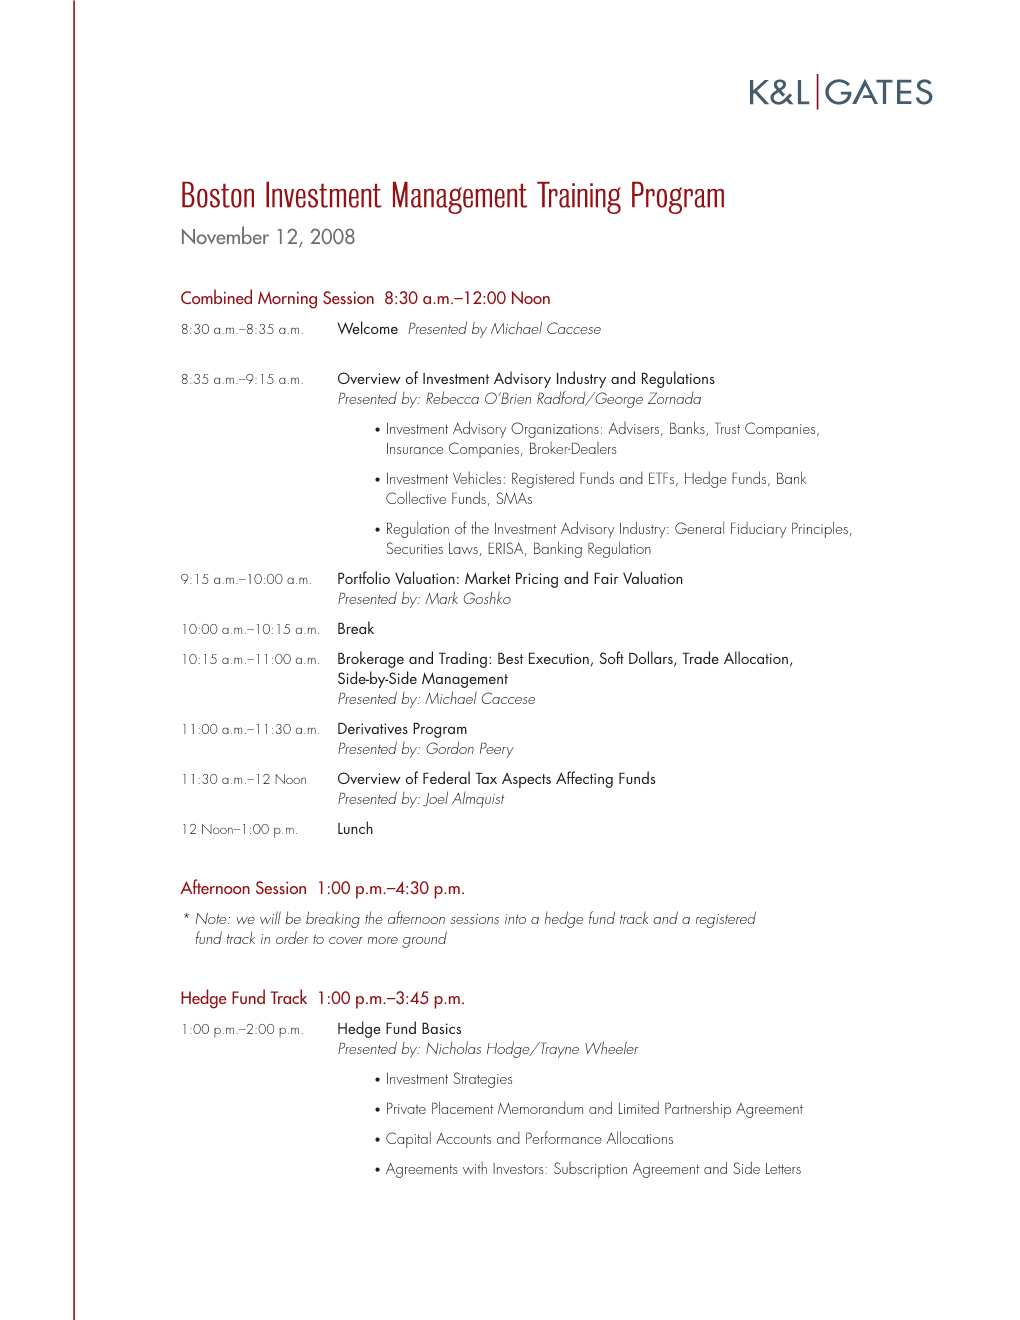 Boston Investment Management Training Program November 12, 2008